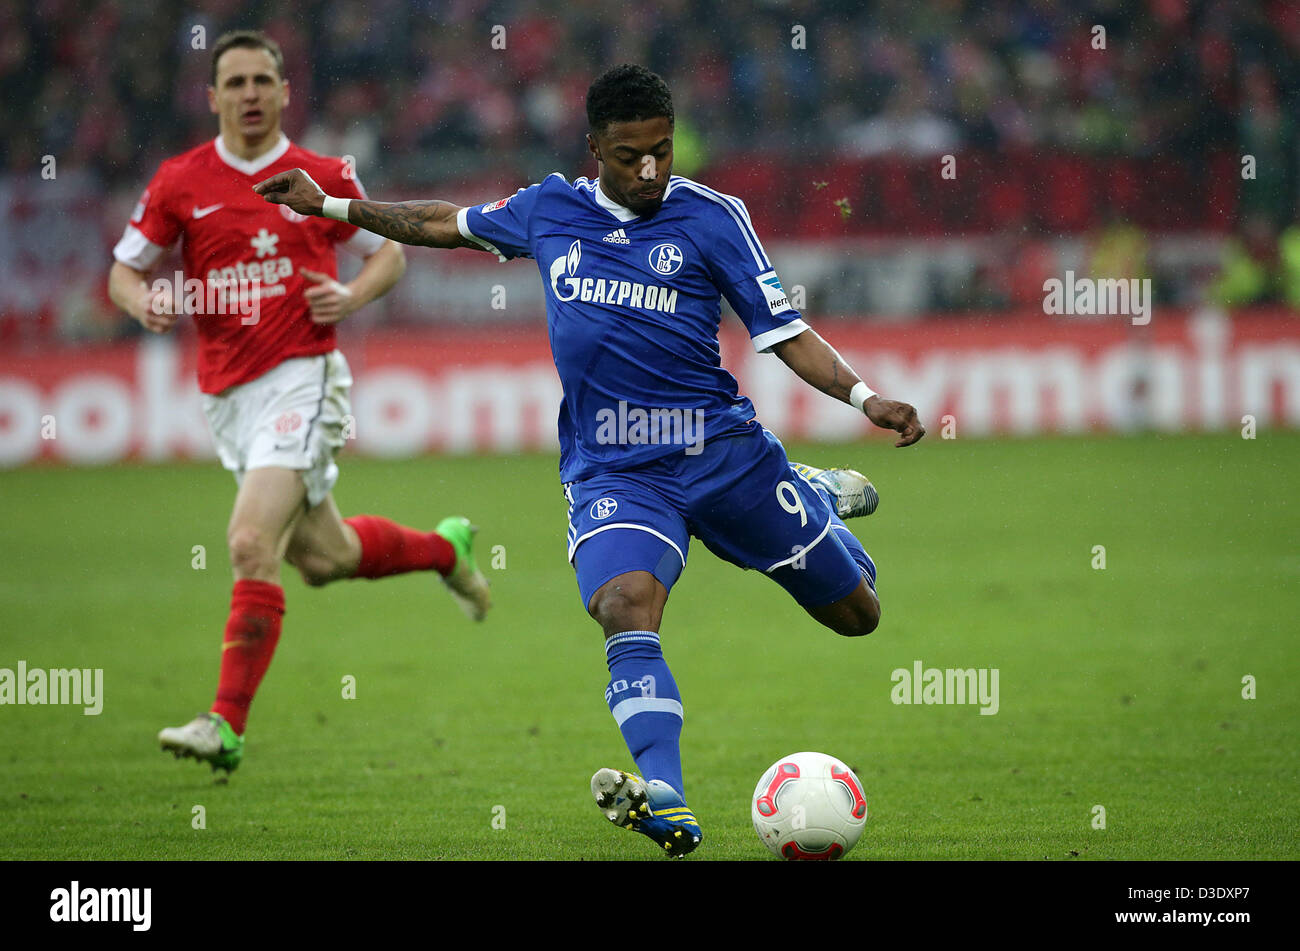 Michel BASTOS (9), FC Schalke 04 1. Bundesliga : 1. FSV Mainz 05 - FC Schalke 04, 22. Spieltag am 29.01.2013 Foto : M. Deines / PROMEDIAFOTO Banque D'Images